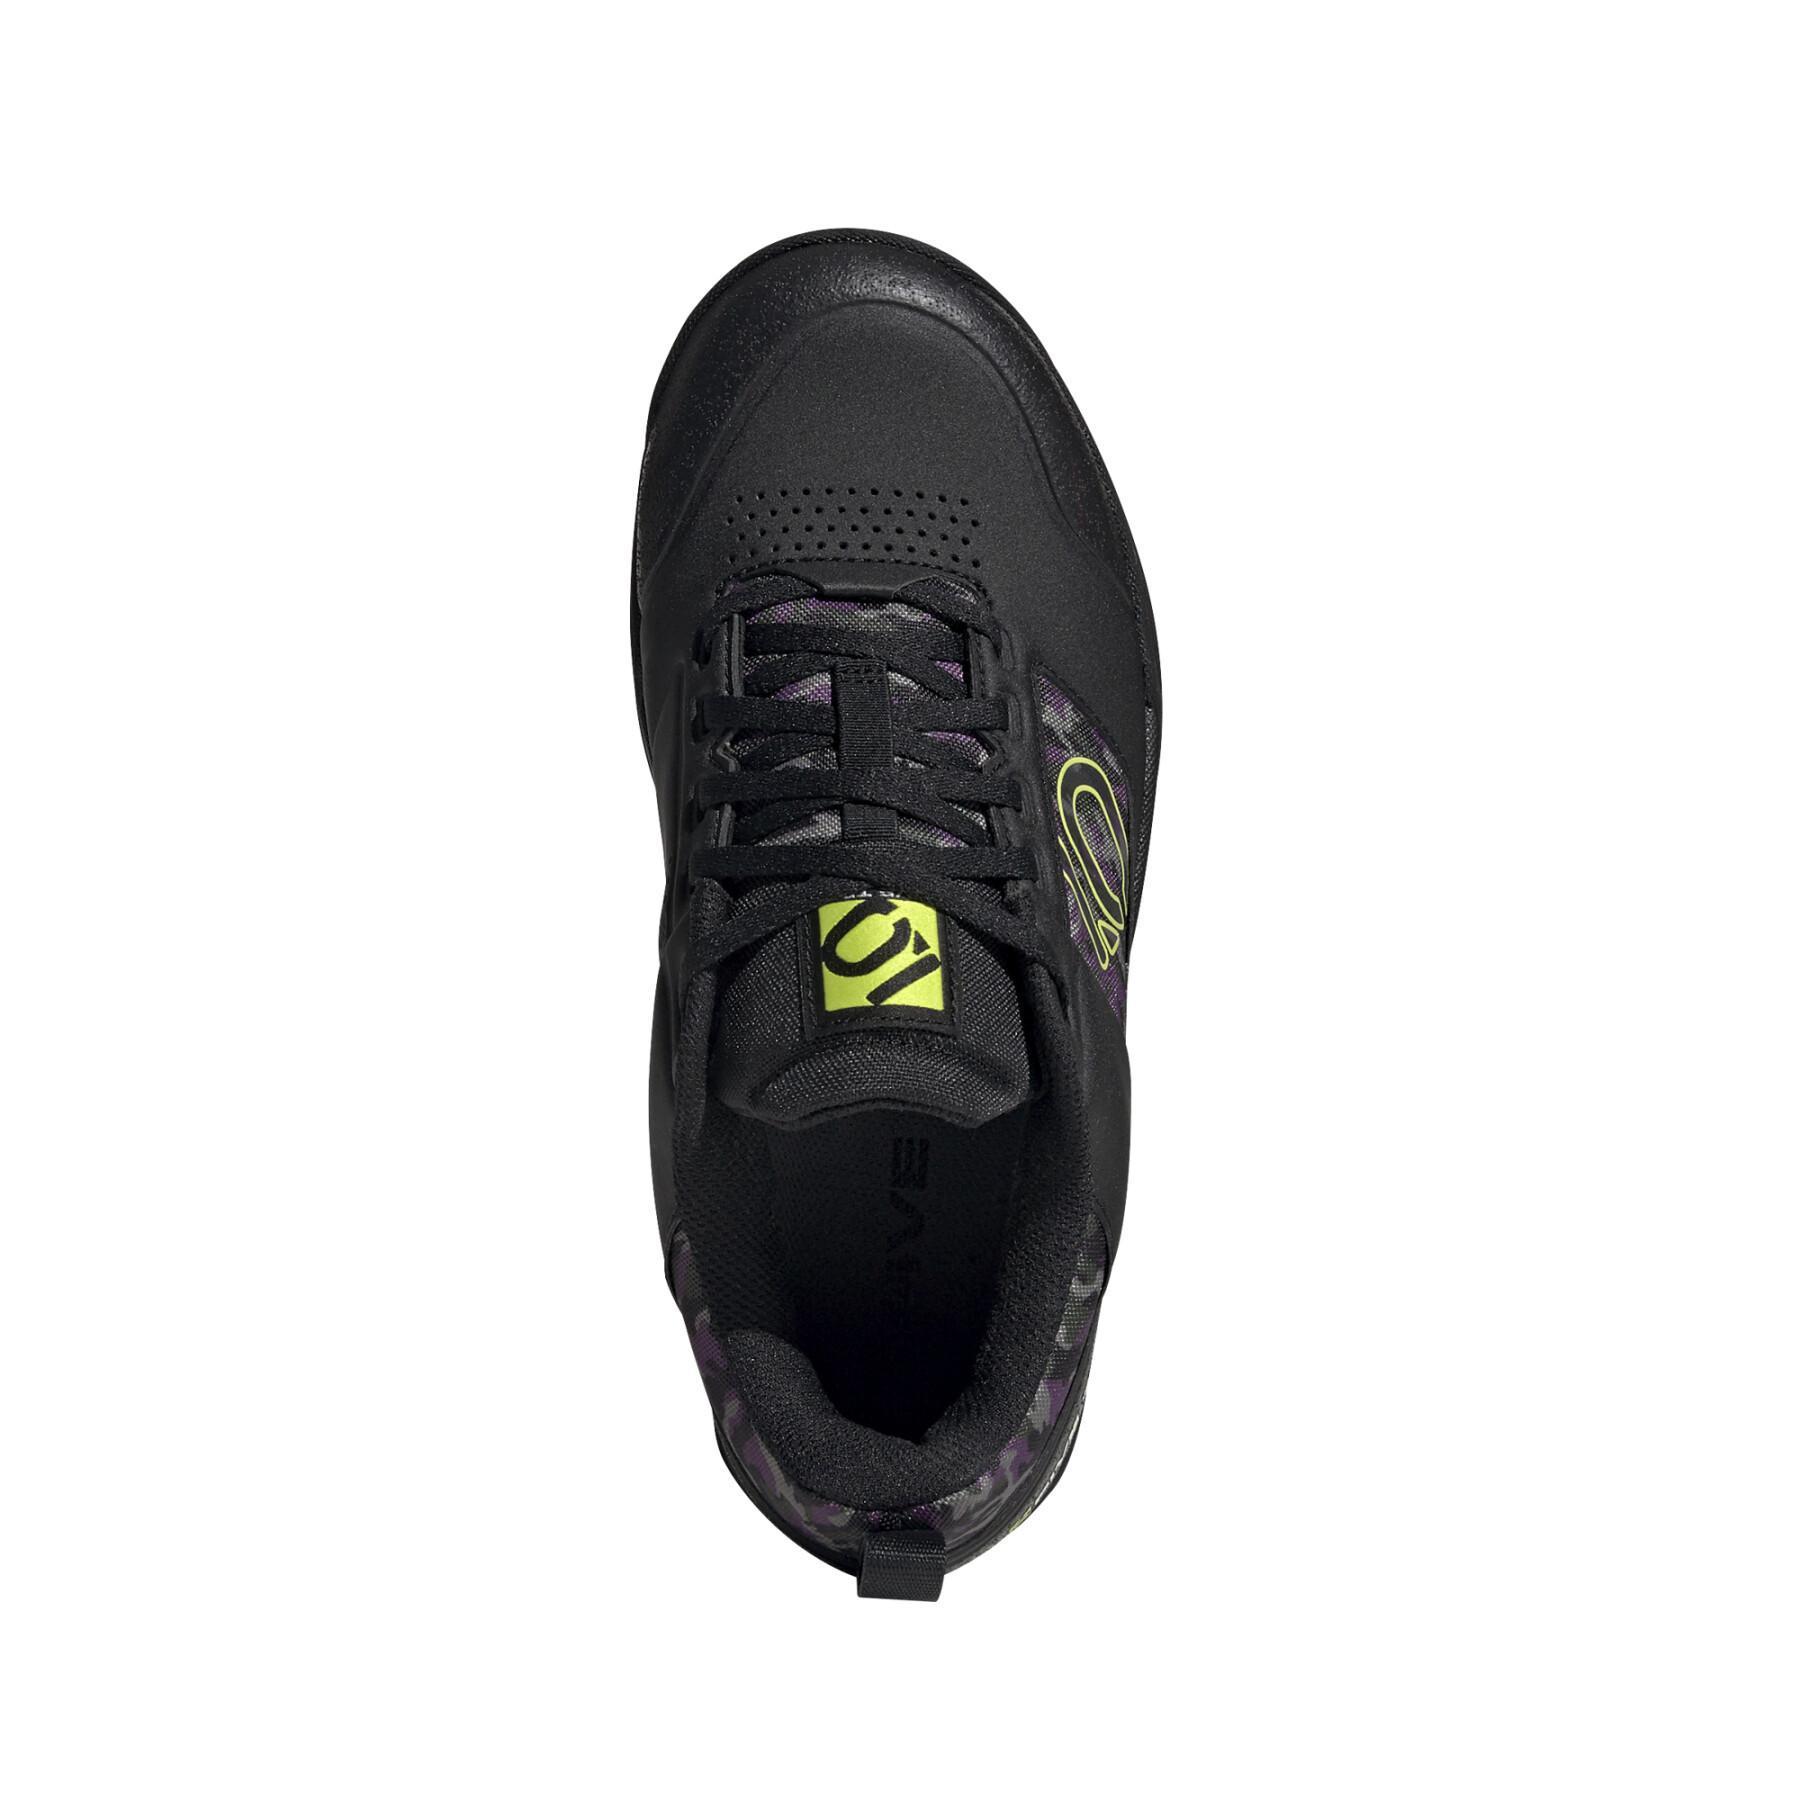 Women's mountain bike shoes adidas Five Ten Impact Pro